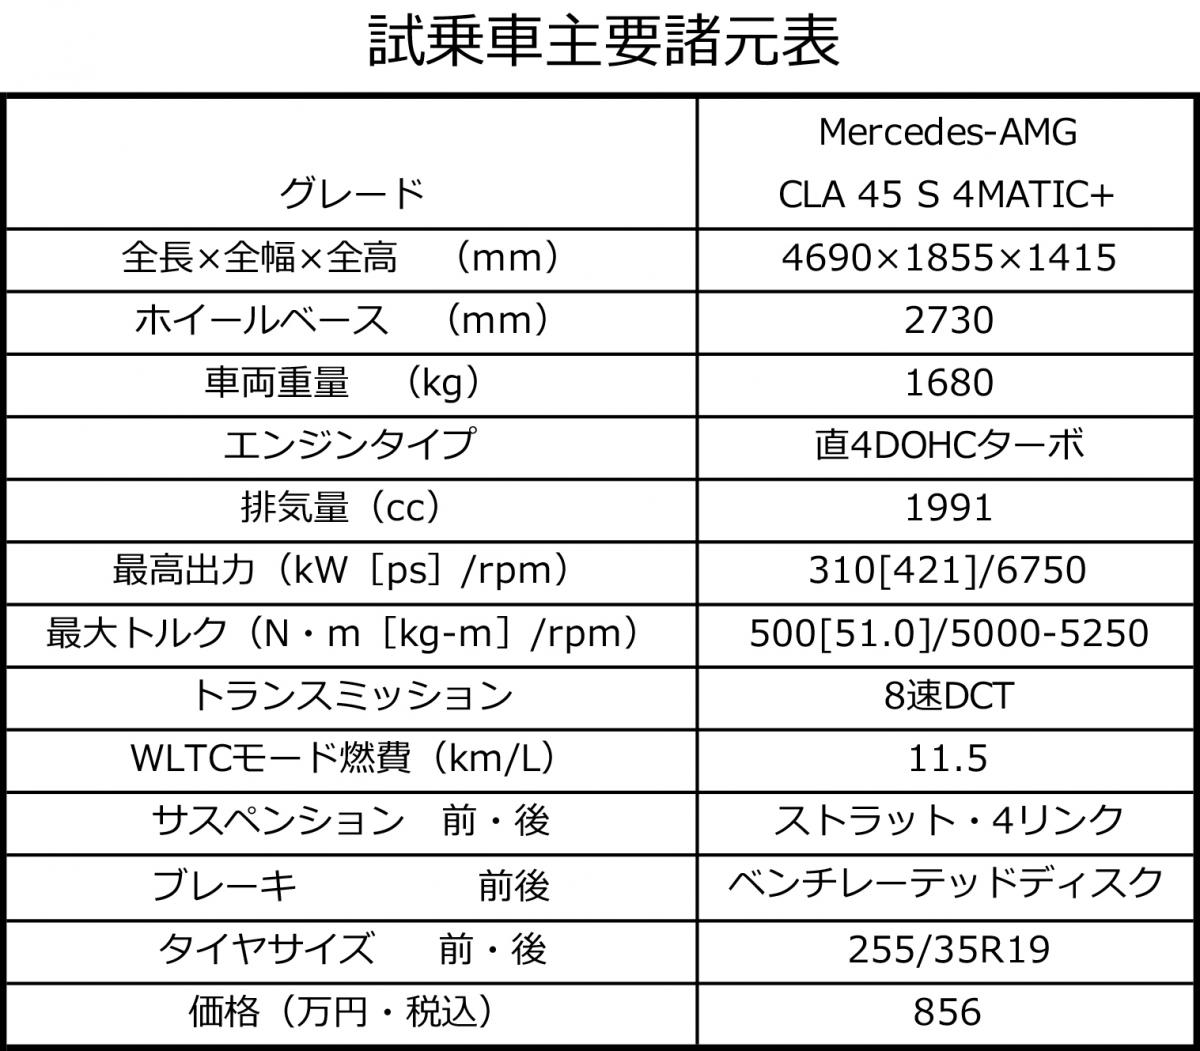 メルセデスAMG CLA 45 S 4MATIC+のサーキット試乗 〜 画像60